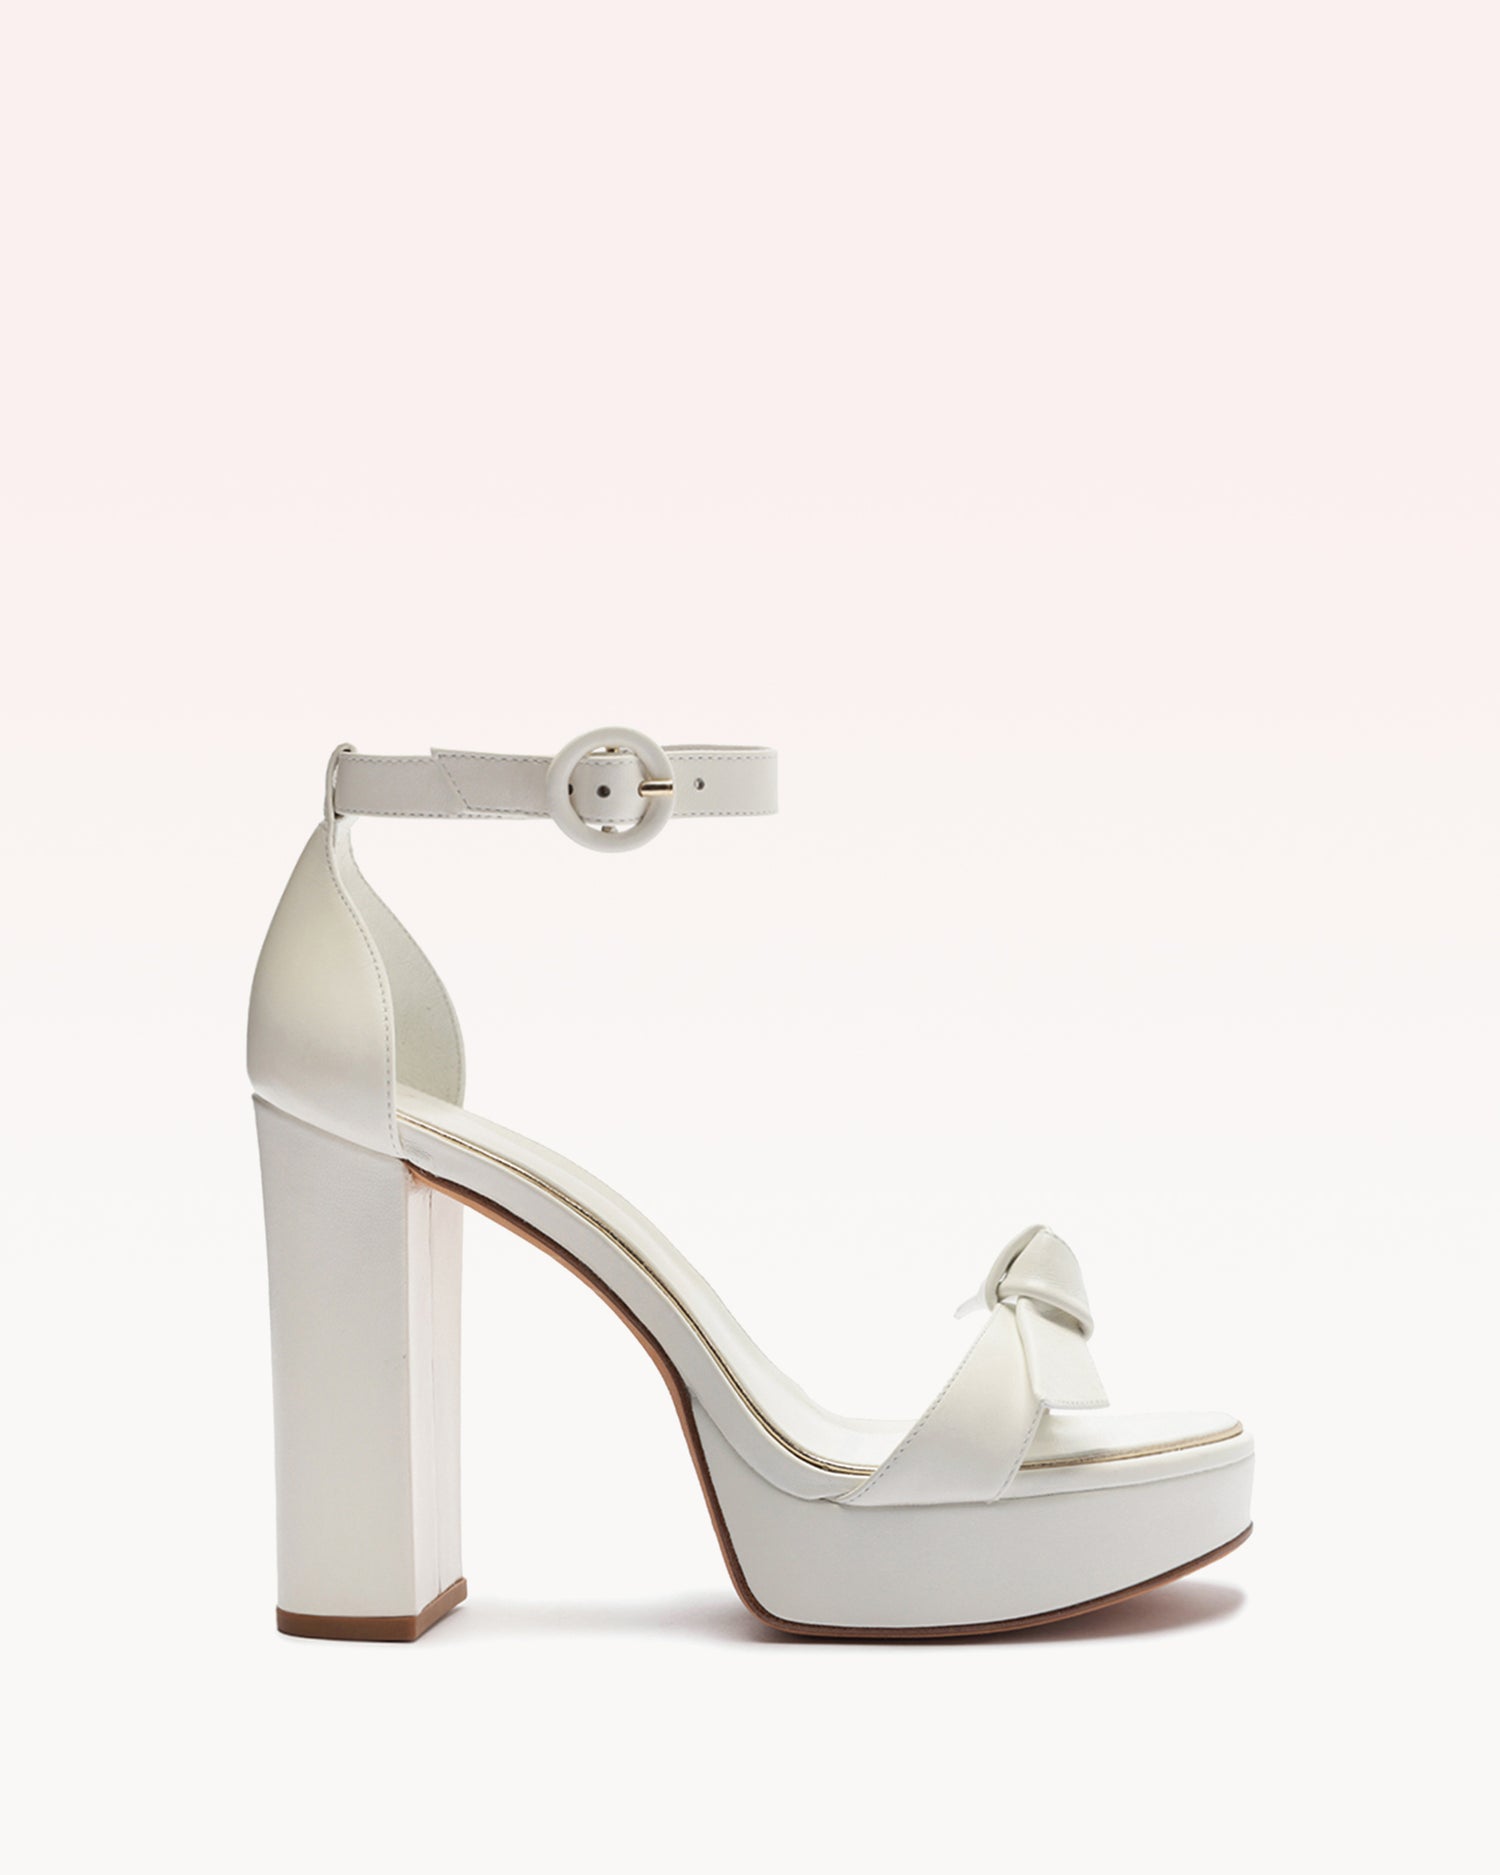 Clarita Platform Bridal 120 White & Golden Sandals F/23 35 White & Golden Nappa Leather